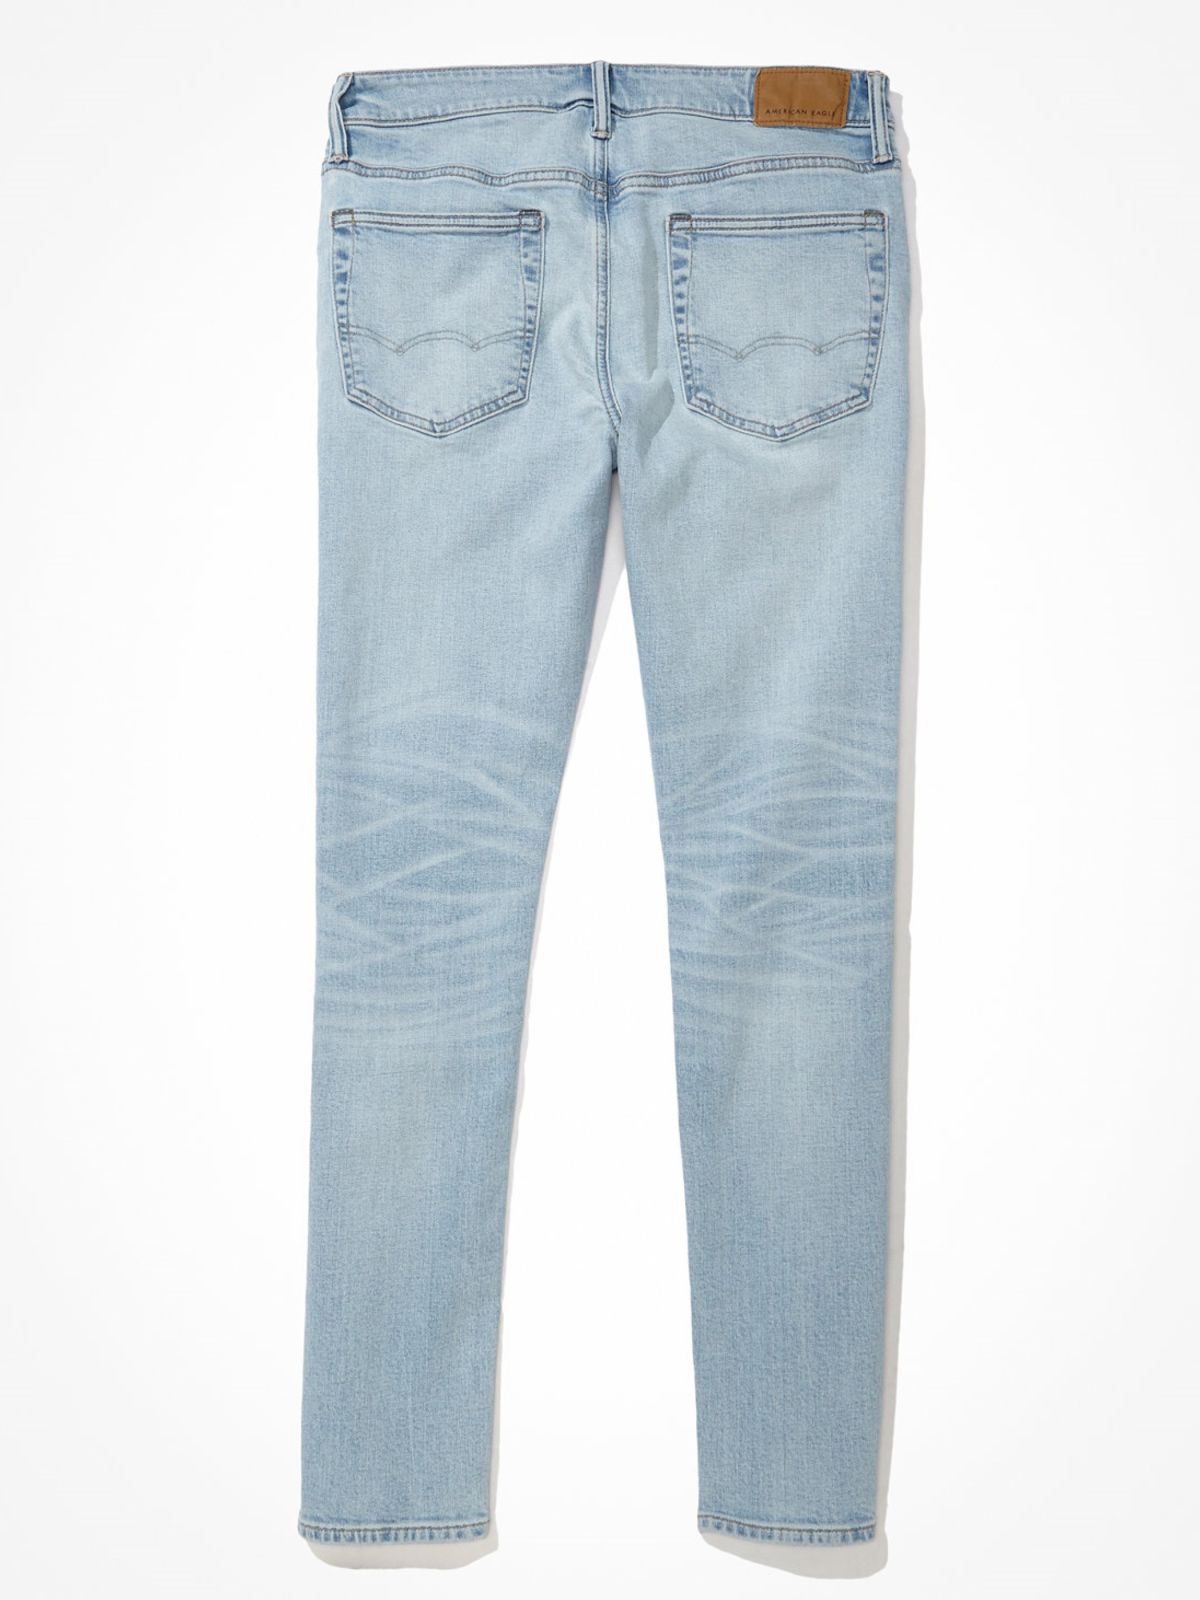  ג'ינס סקיני Light clean של AMERICAN EAGLE